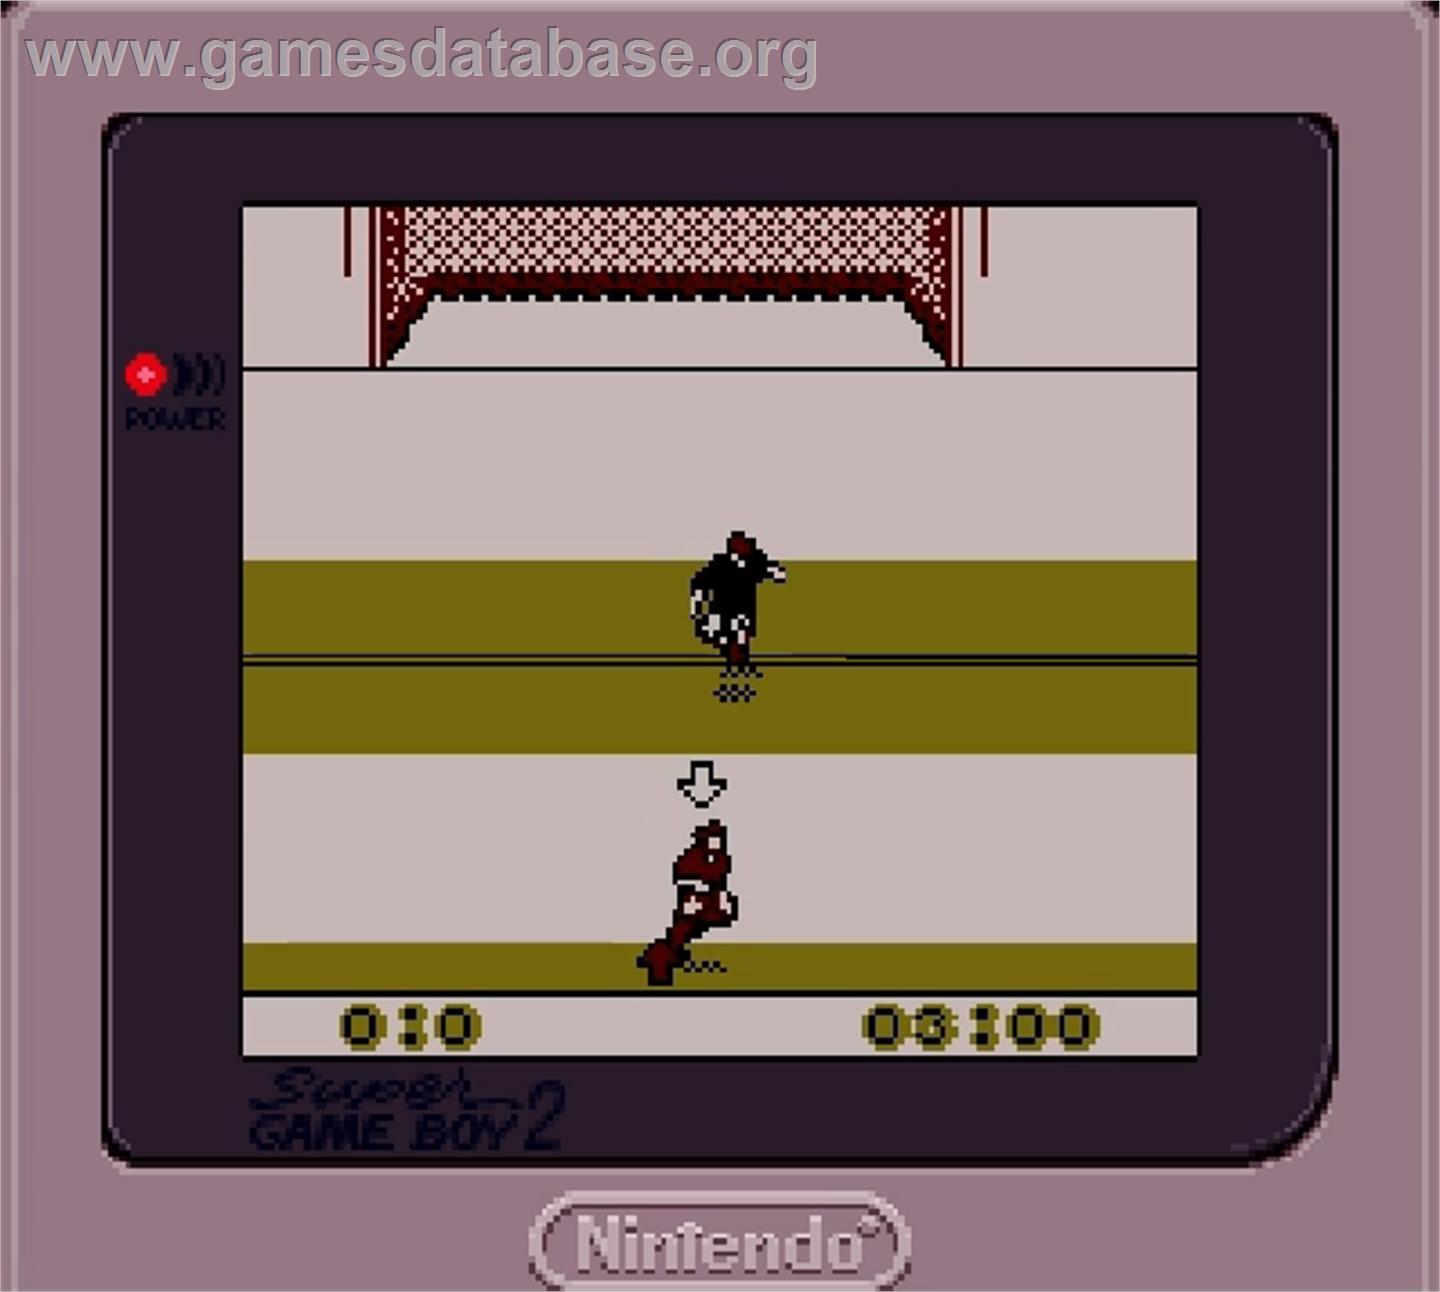 Elite Soccer - Nintendo Super Gameboy - Artwork - In Game